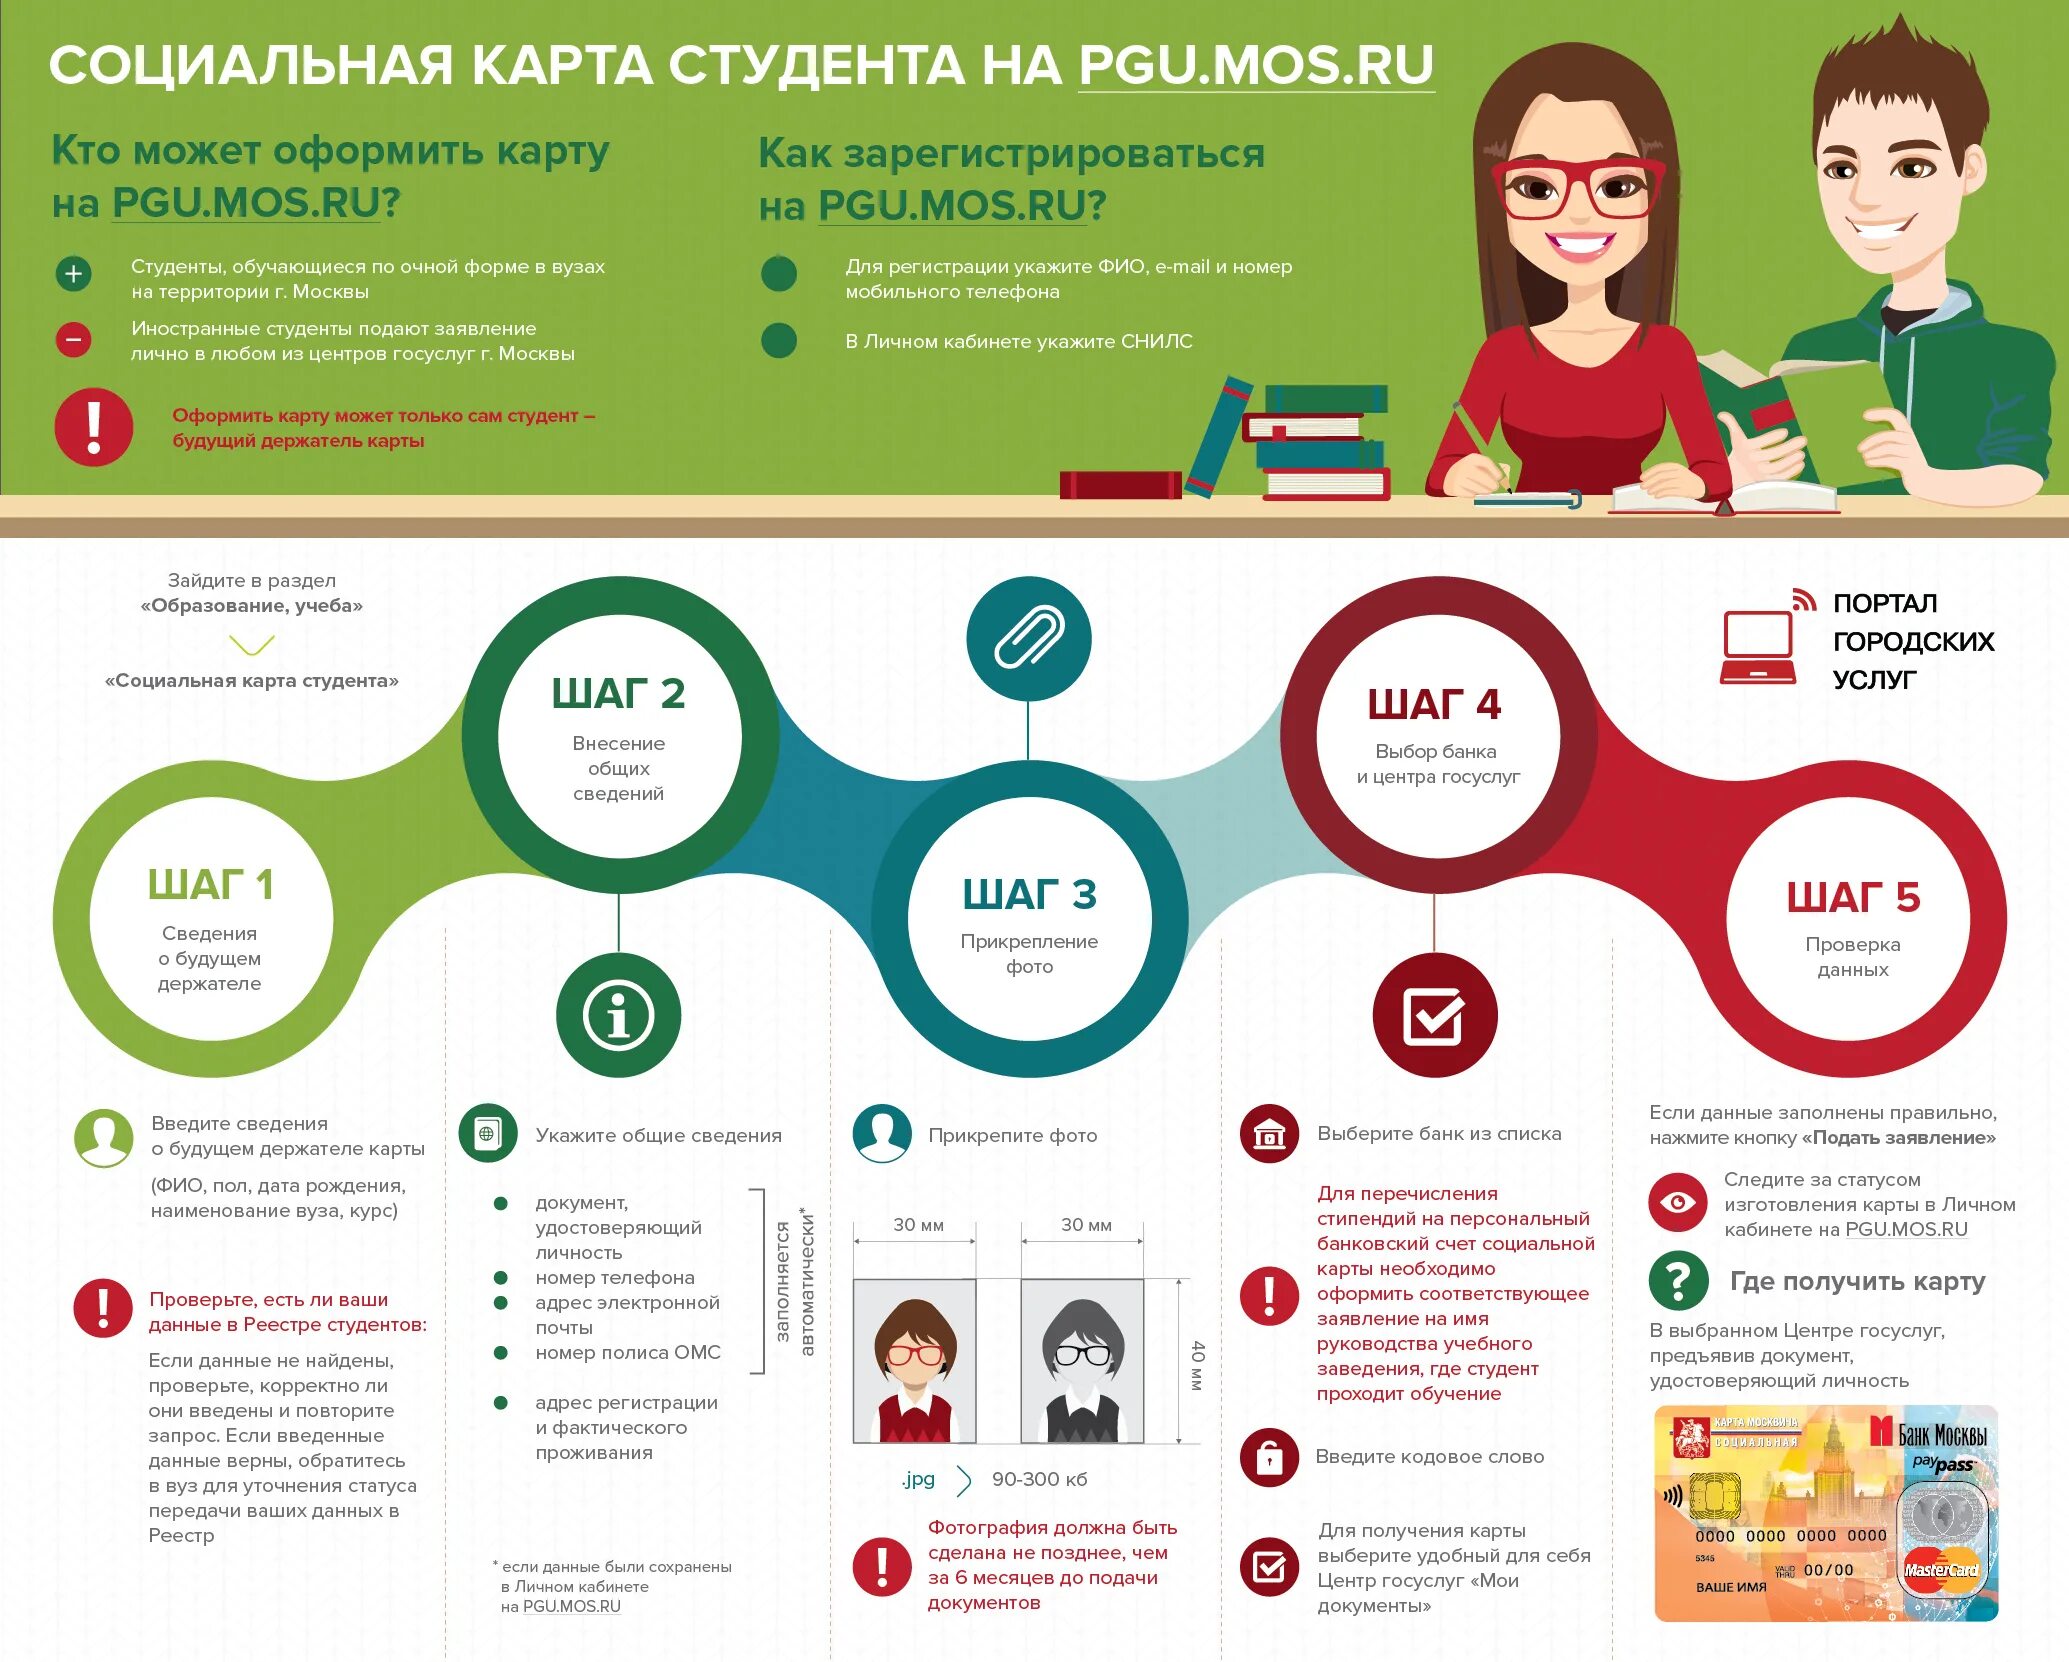 Где взять правило. Социальная карта студента. Студент инфографика. Социальная карта студента Москва. Инструкция в инфографике.